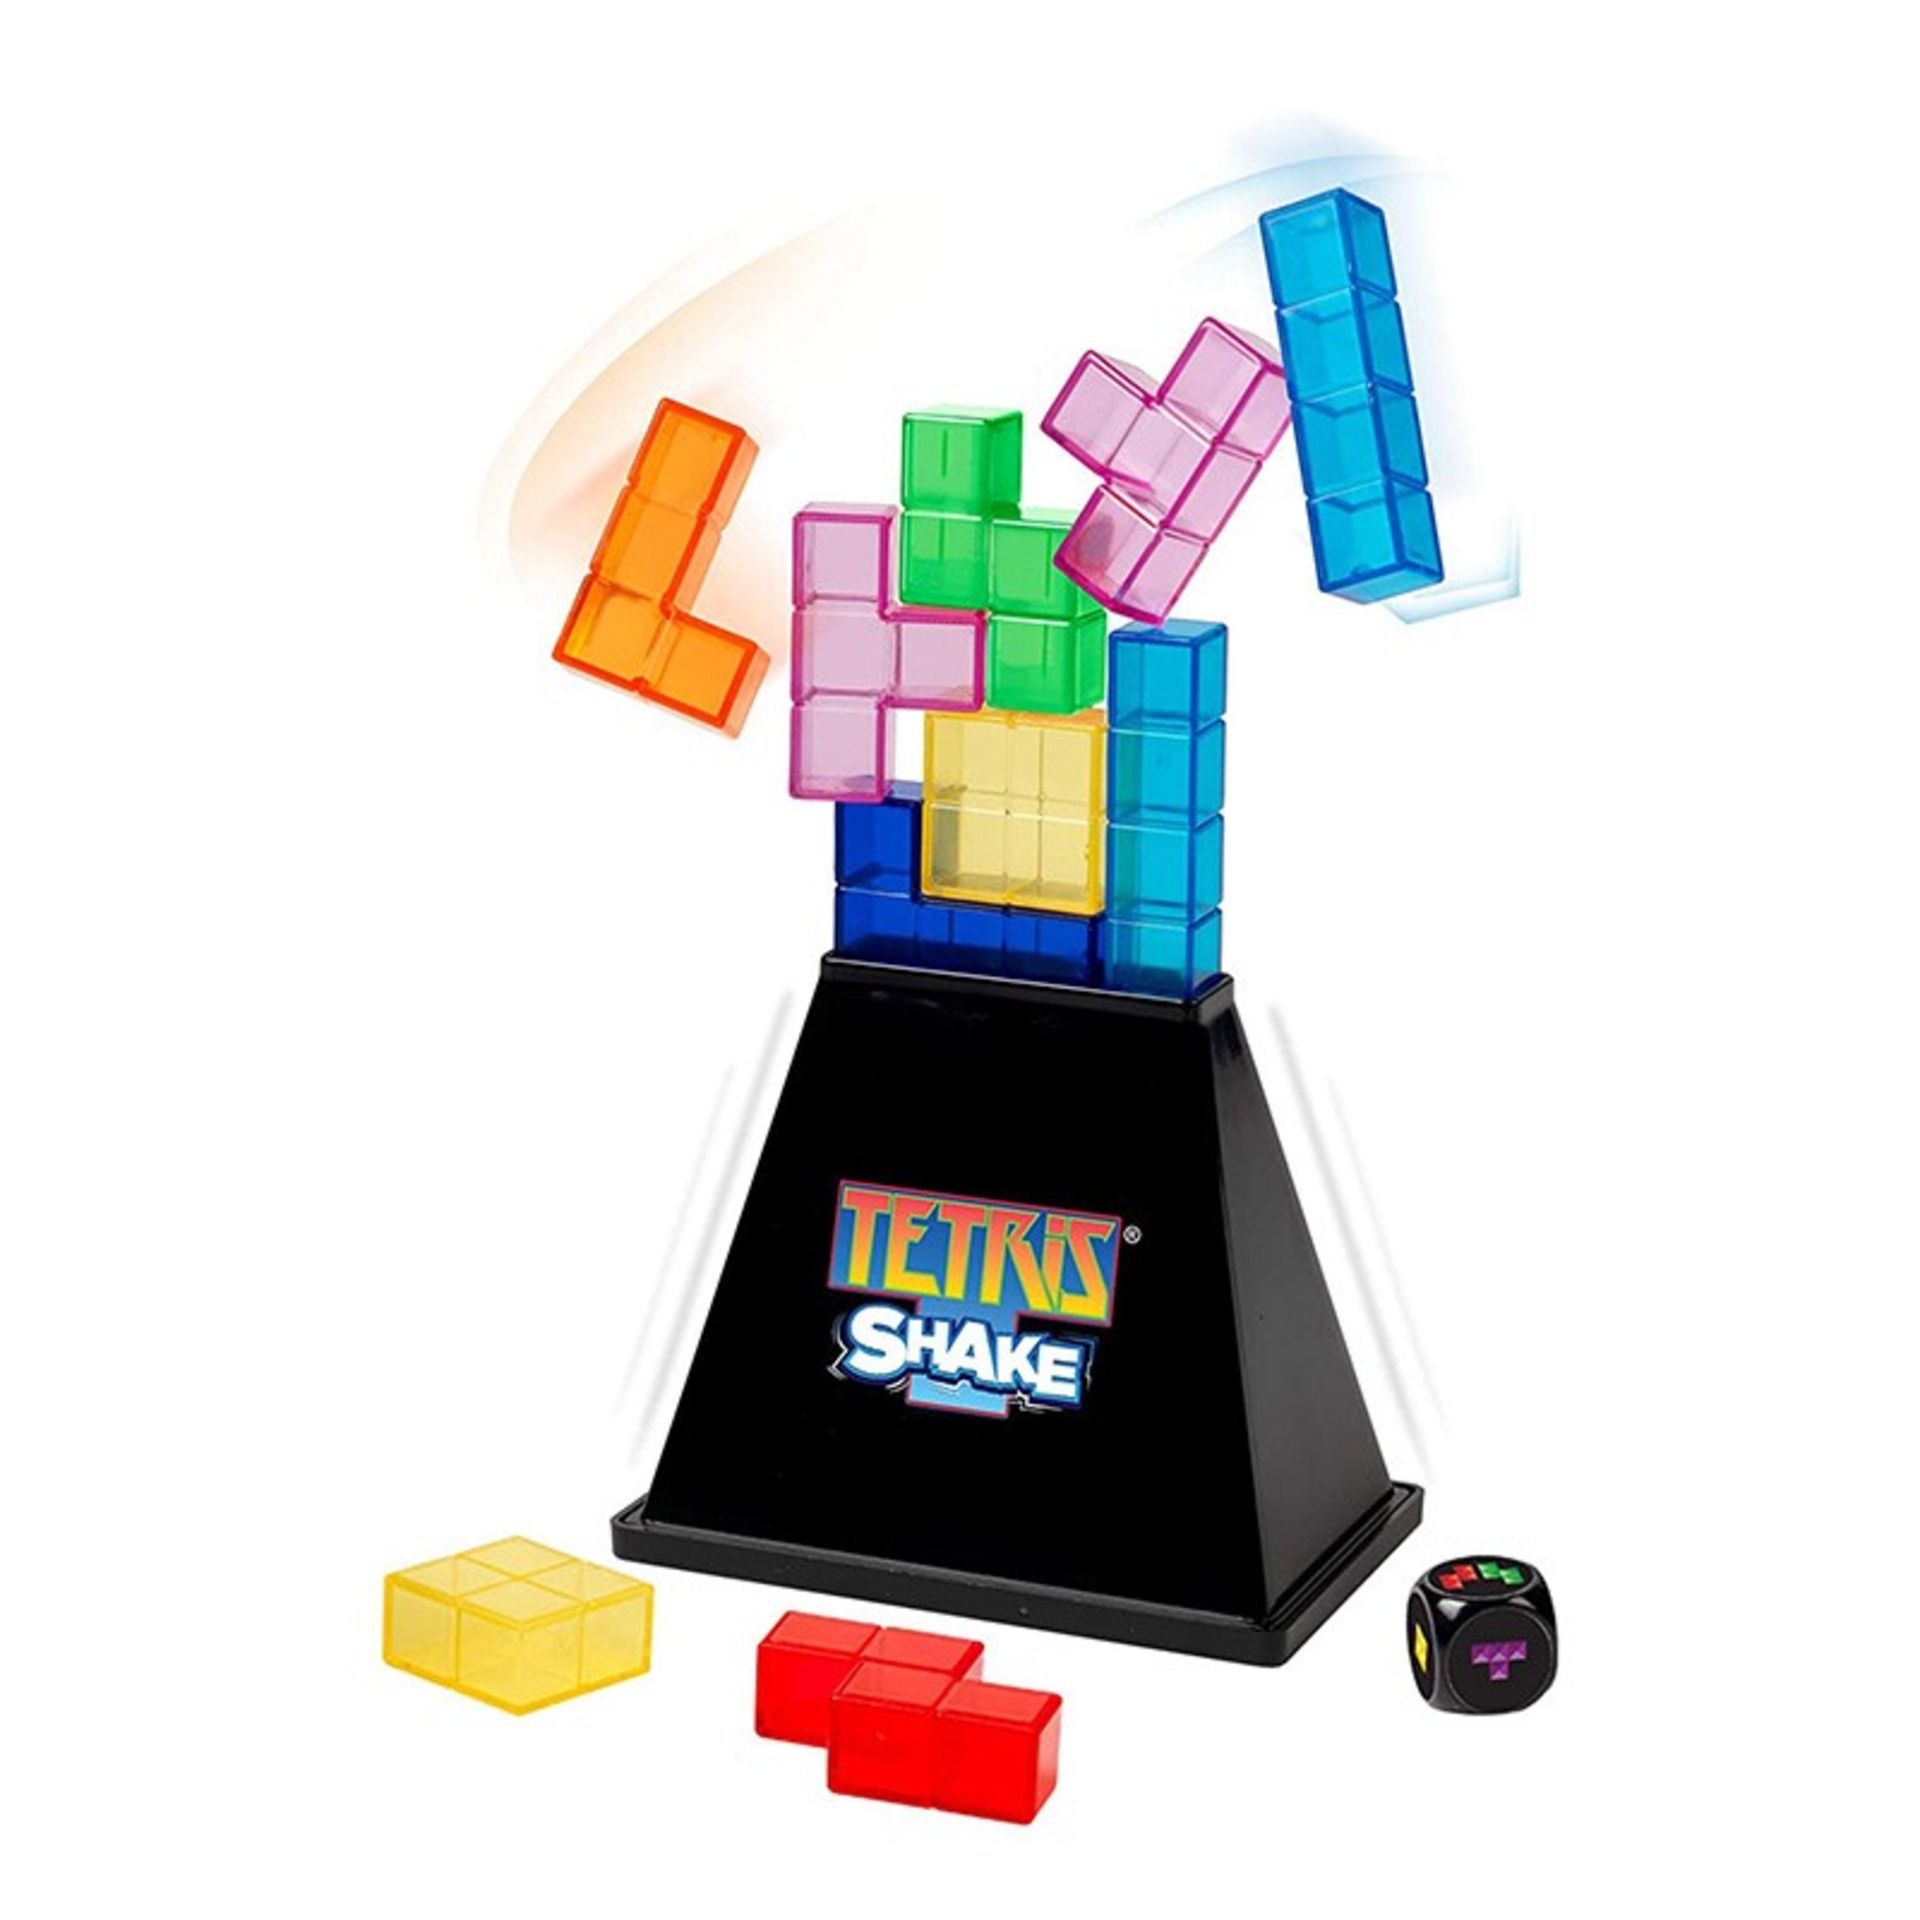 New Tetris Shake With Vibrating Base